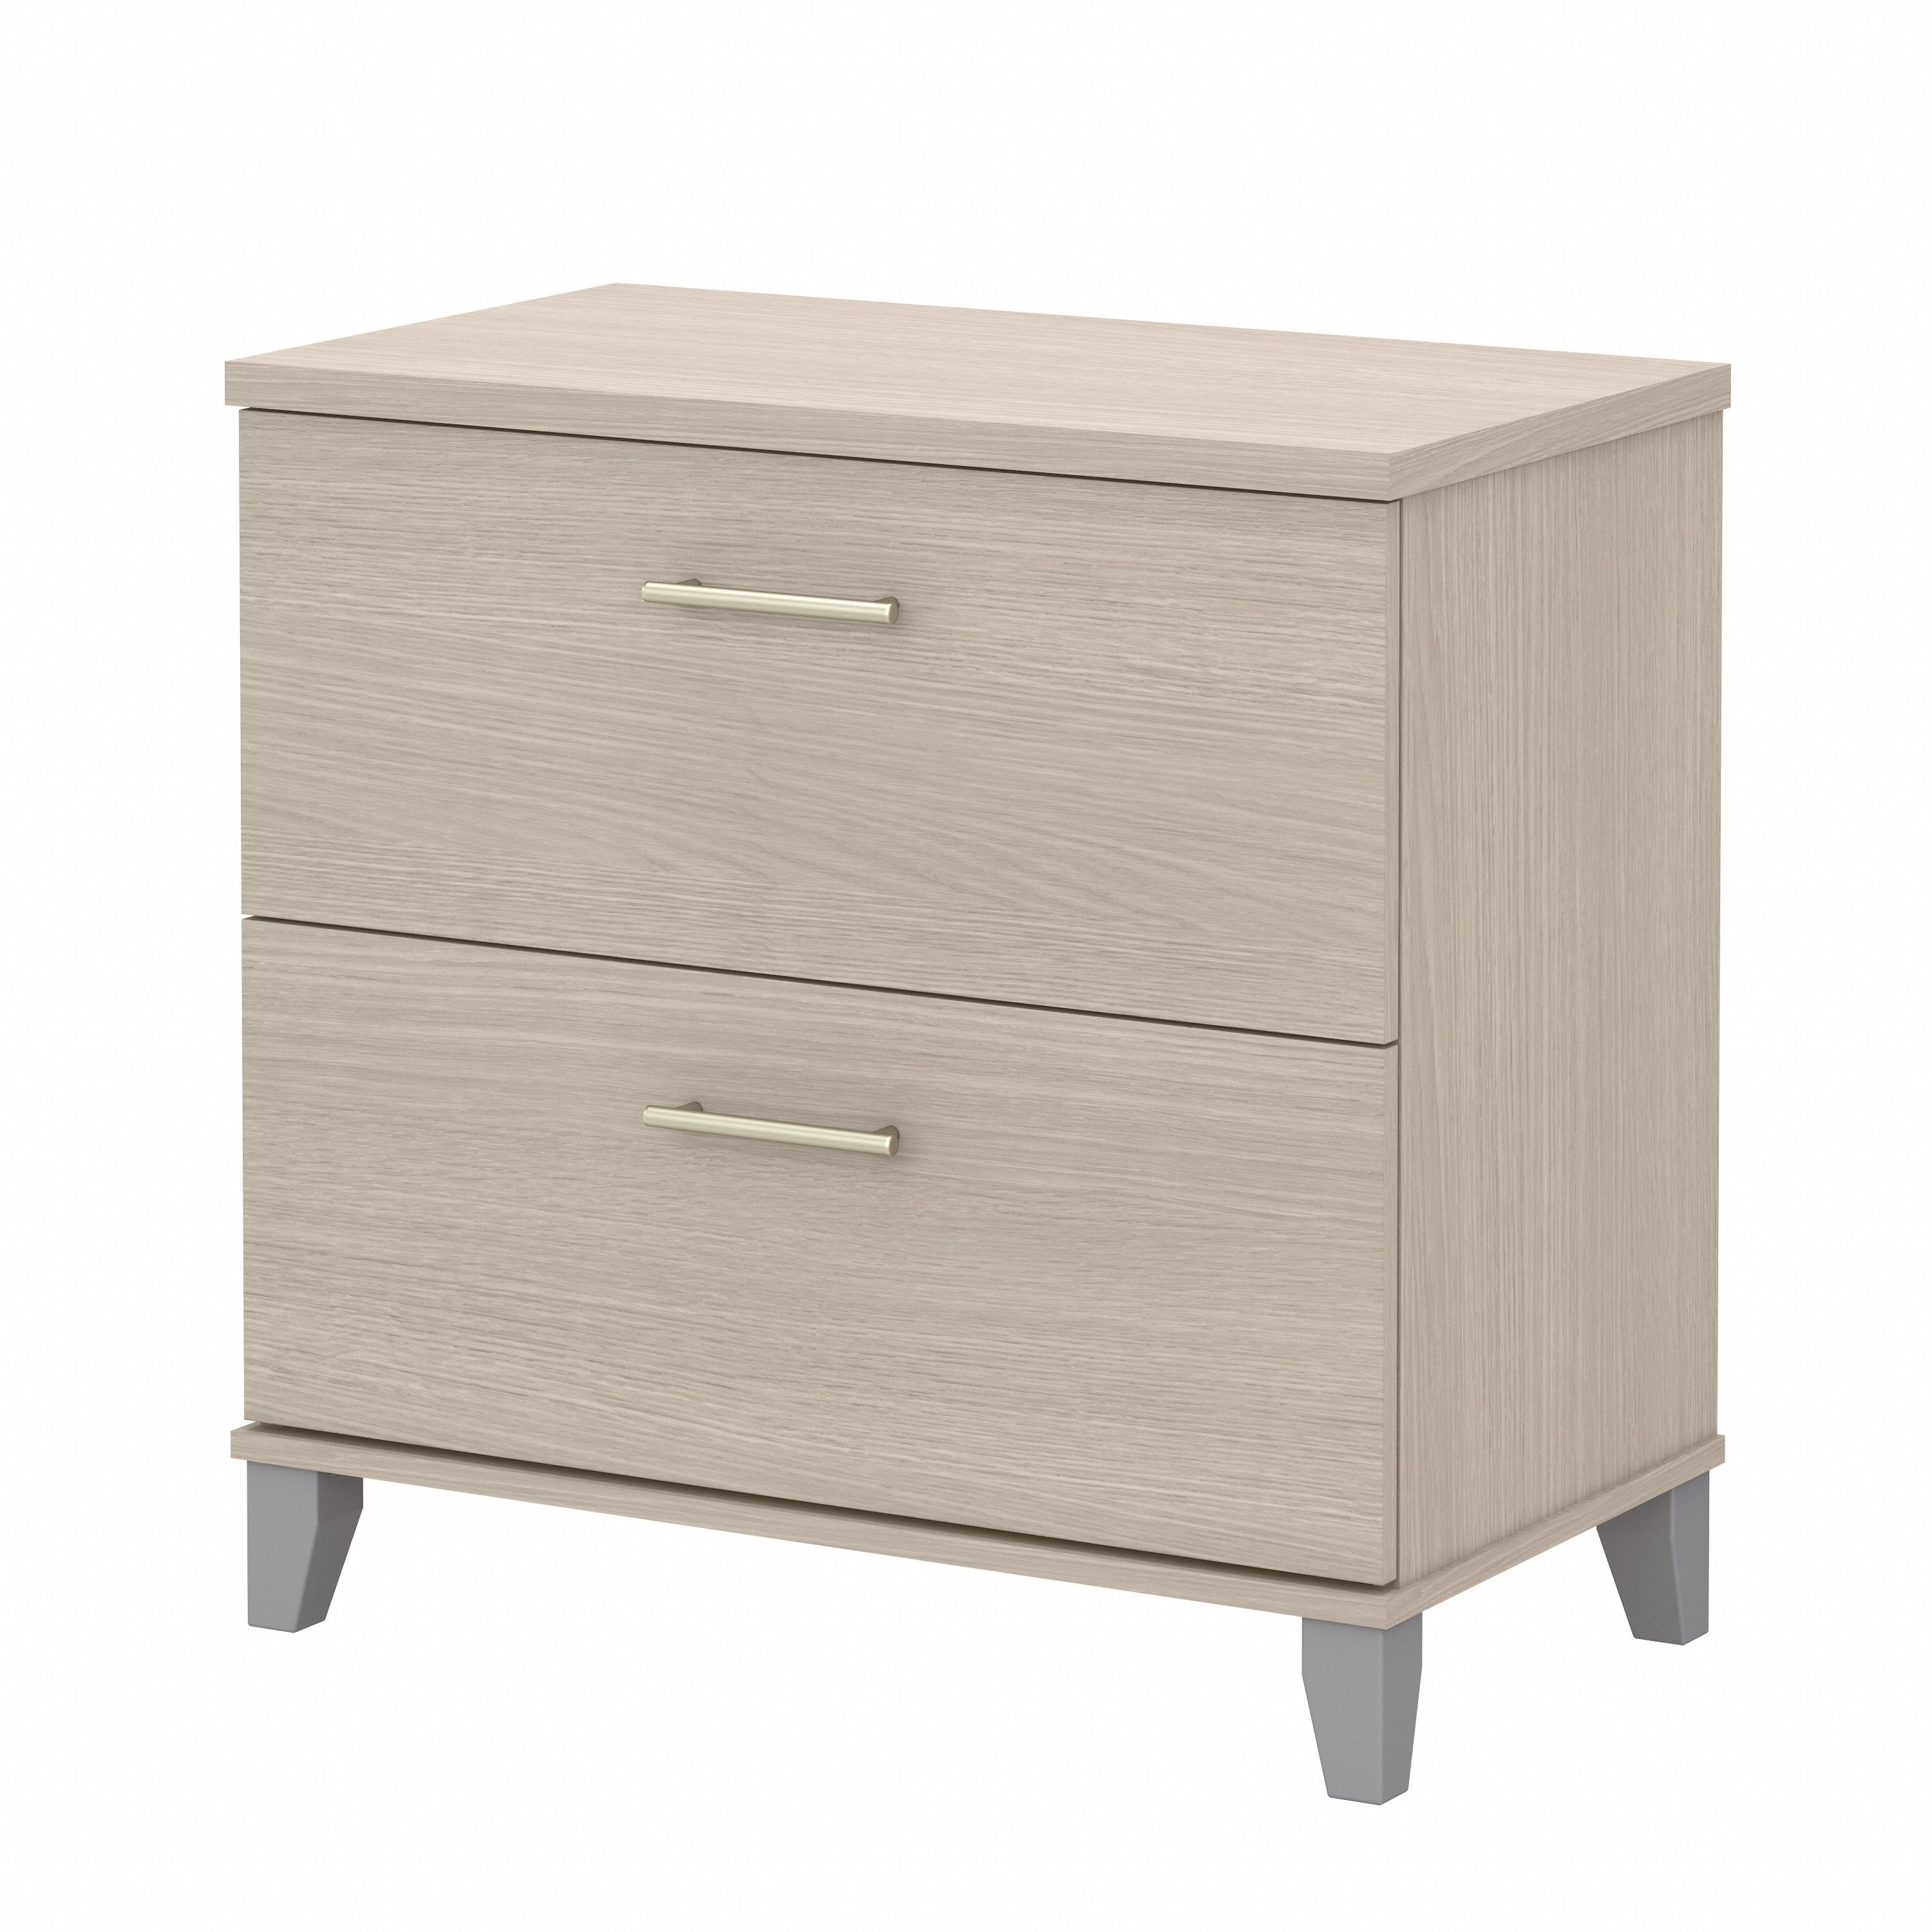 Shop Bush Furniture Somerset 2 Drawer Lateral File Cabinet 02 WC81180 #color_sand oak